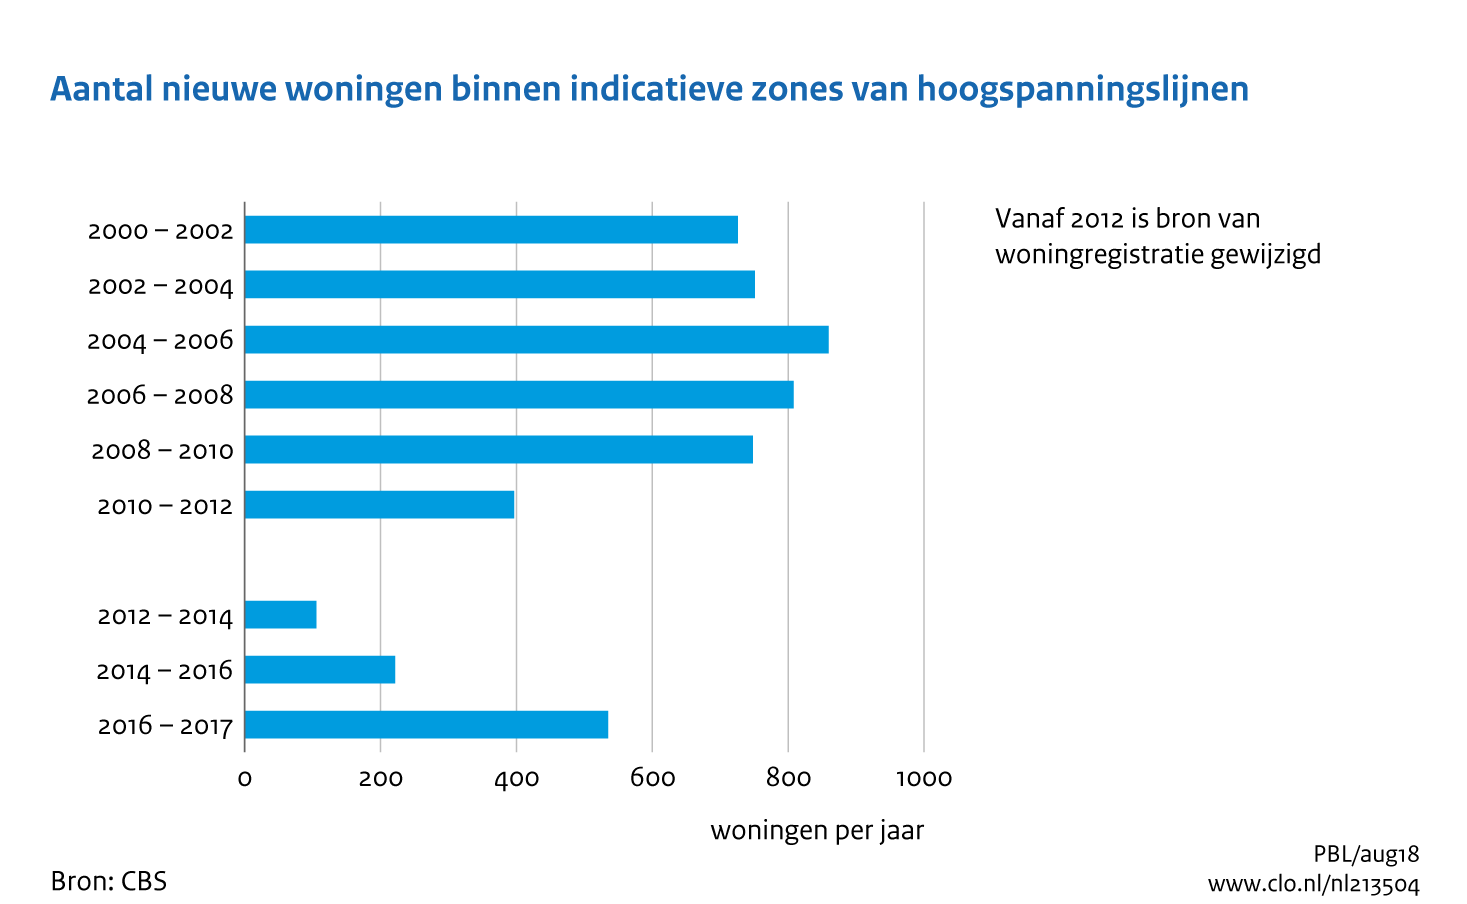 Figuur Aantal nieuwe woningen binnen indicatieve zones van hoogspanningslijnen, 2000-2017 . In de rest van de tekst wordt deze figuur uitgebreider uitgelegd.